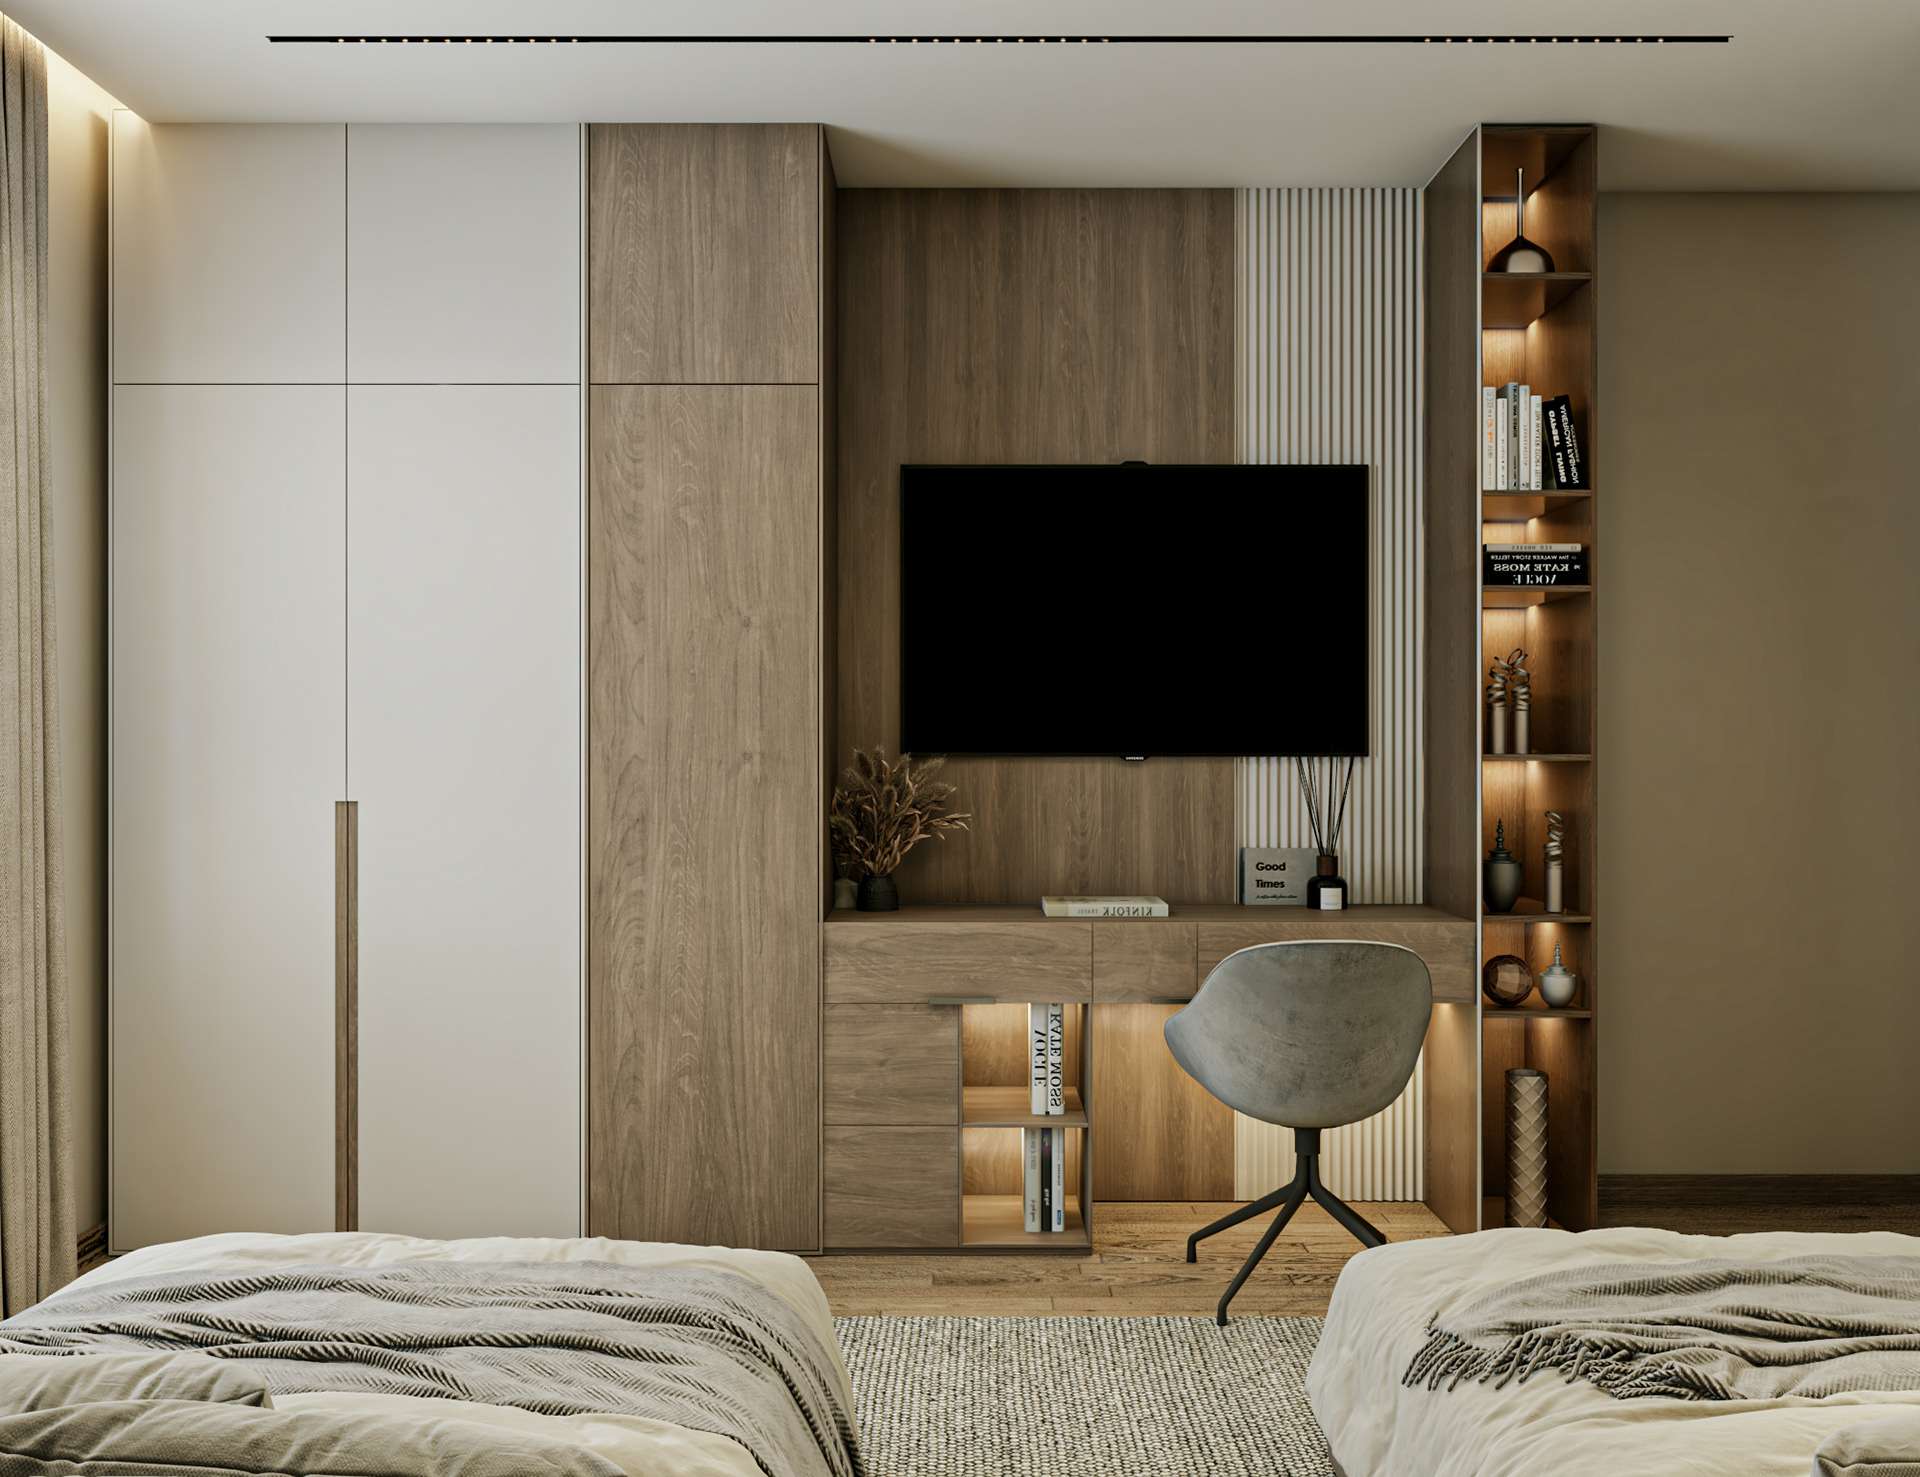 Nội thất gỗ công nghiệp cho phòng ngủ vừa tiện nghi vừa tiết kiệm chi phí hiệu quả